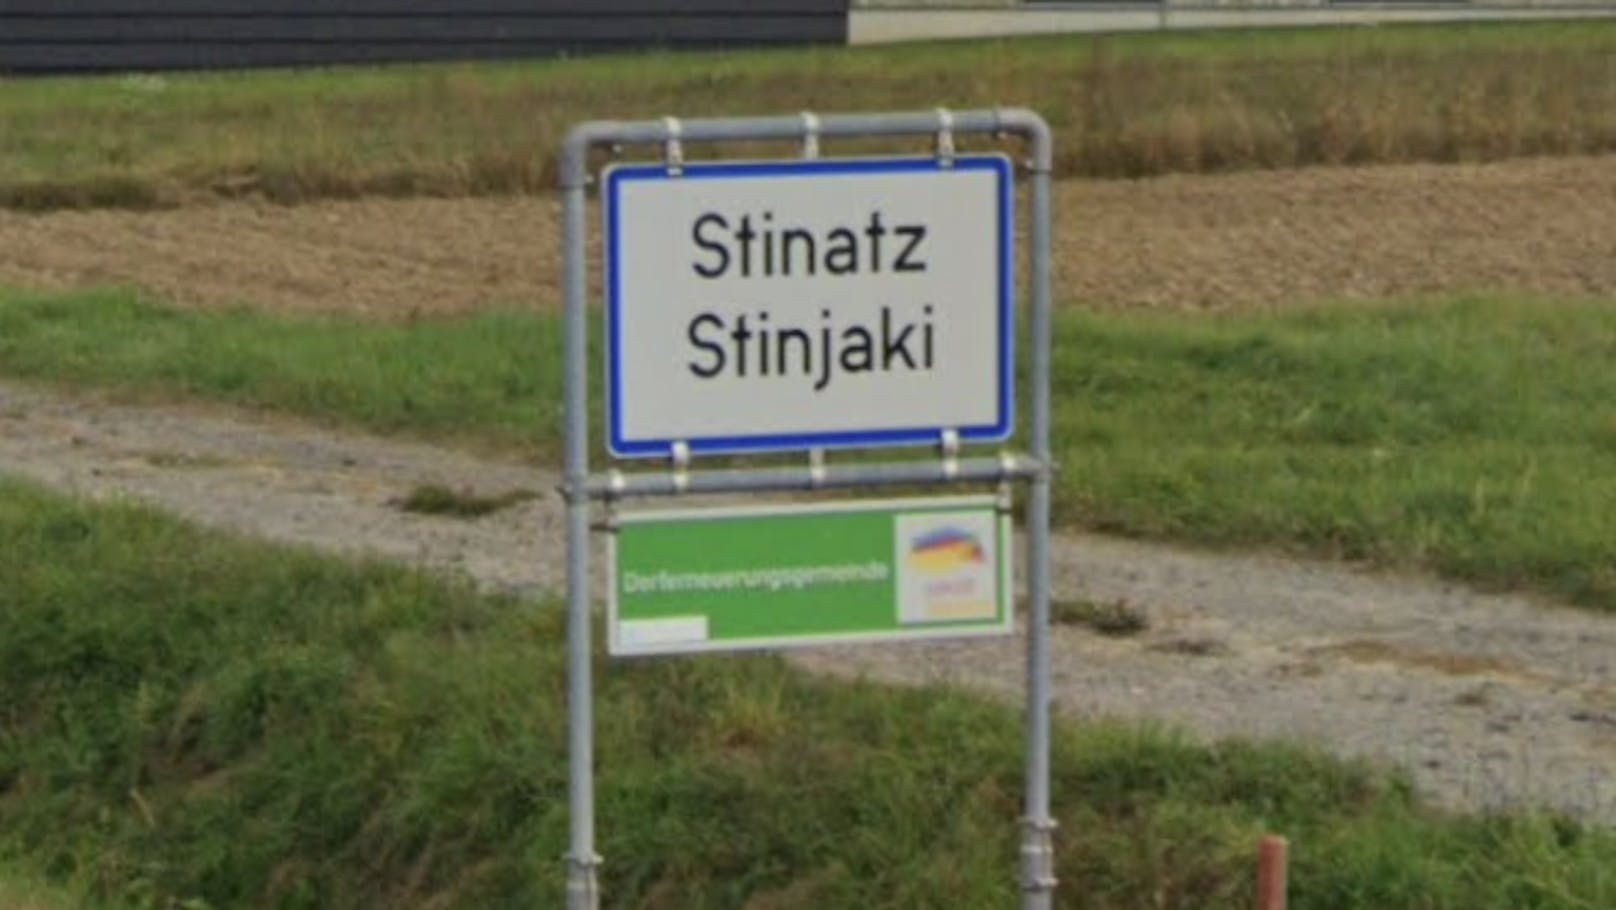 Ortstafel von Stinatz gestohlen – Polizei rätselt